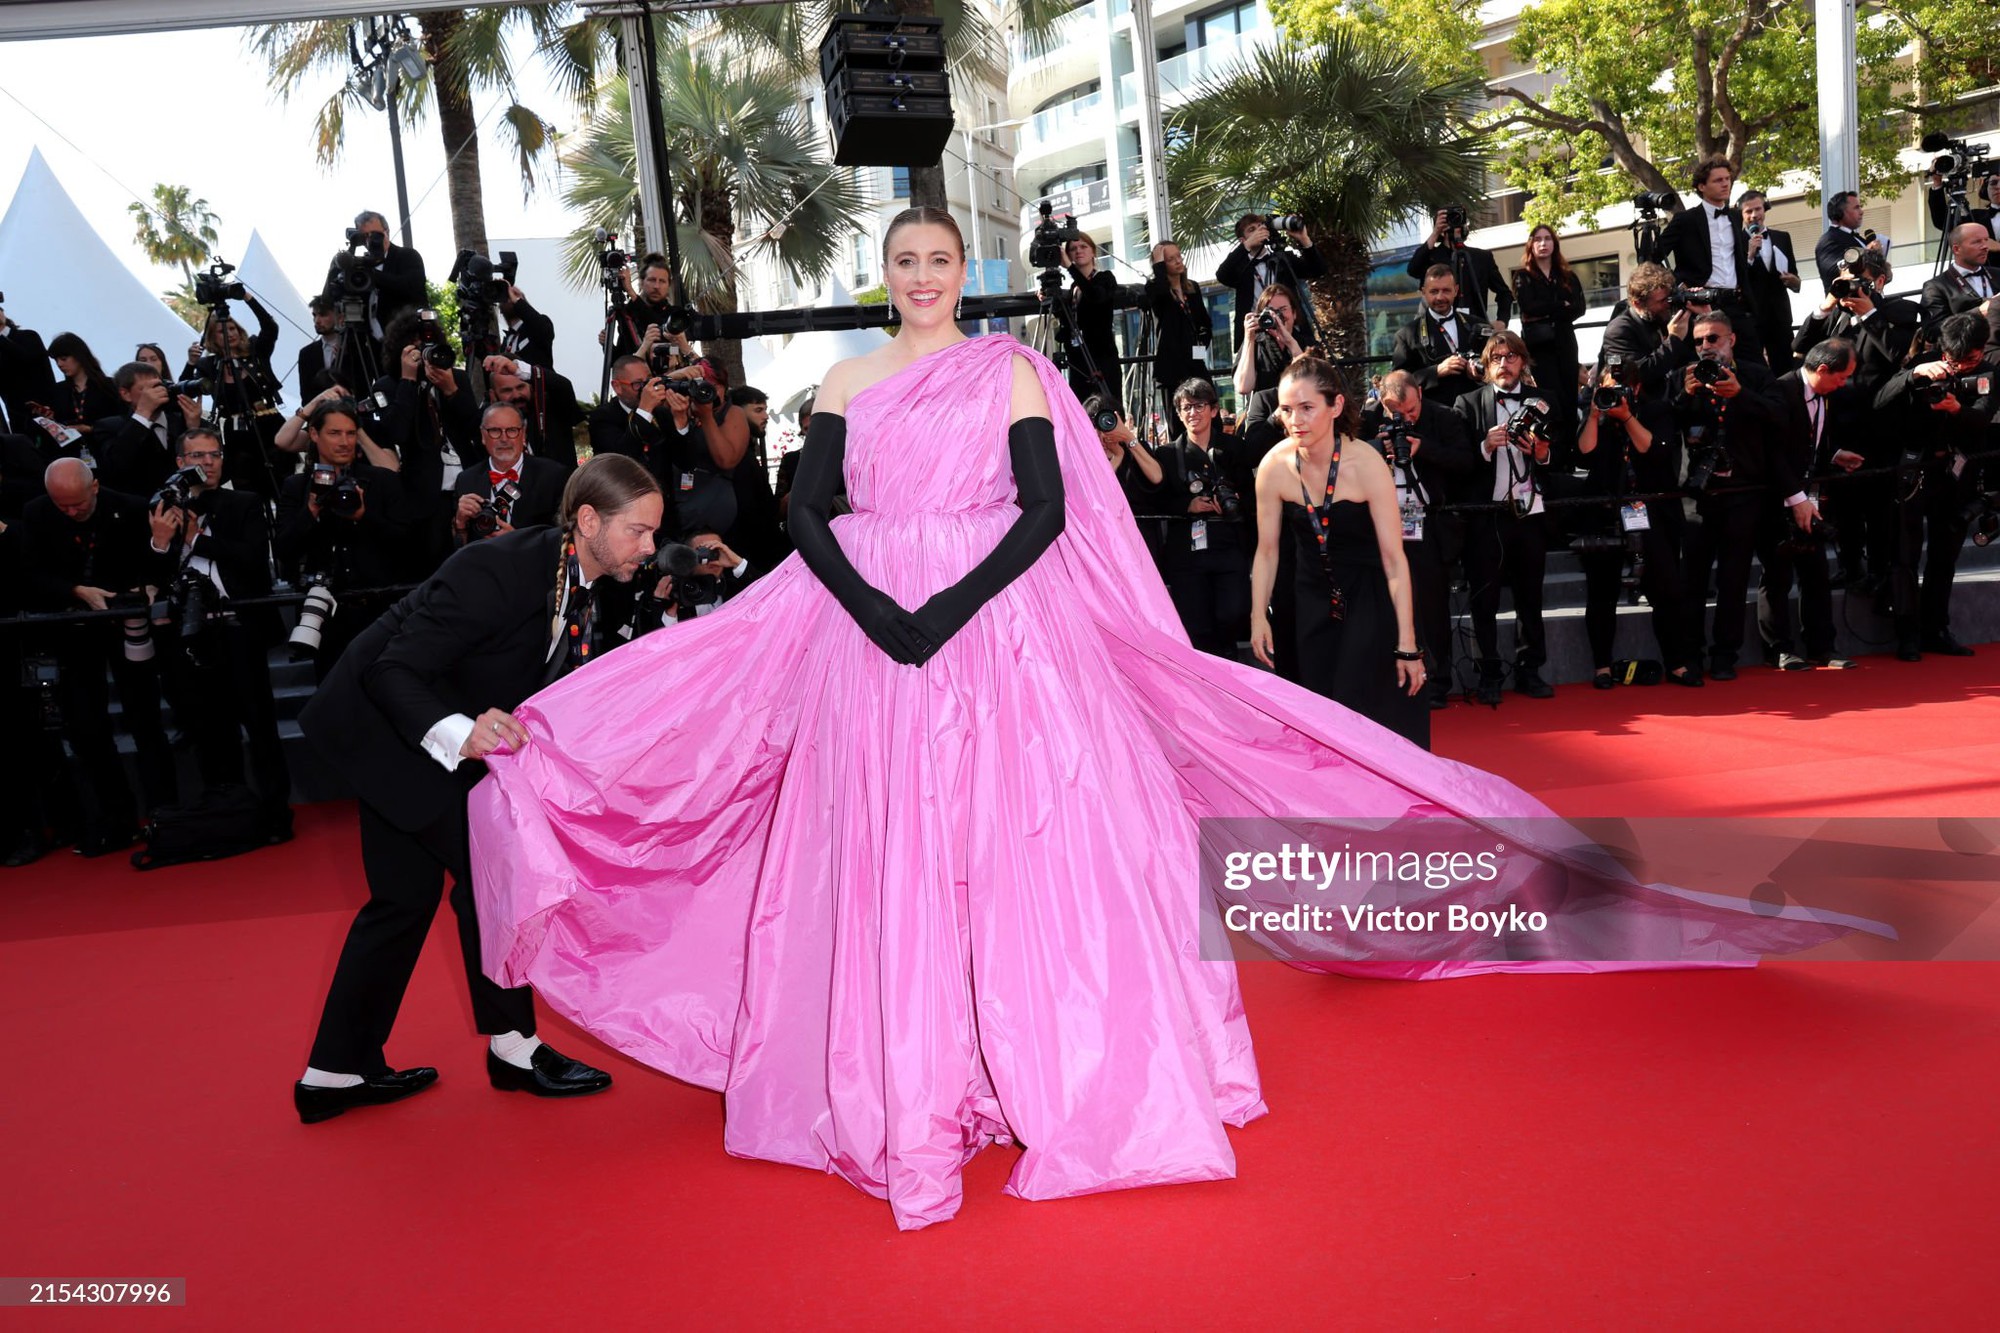 Thảm đỏ Cannes ngày 10: Bella Hadid khoe trọn body đồng hồ cát, mỹ nhân 13 Reasons Why nhận cơn mưa lời khen - Ảnh 12.